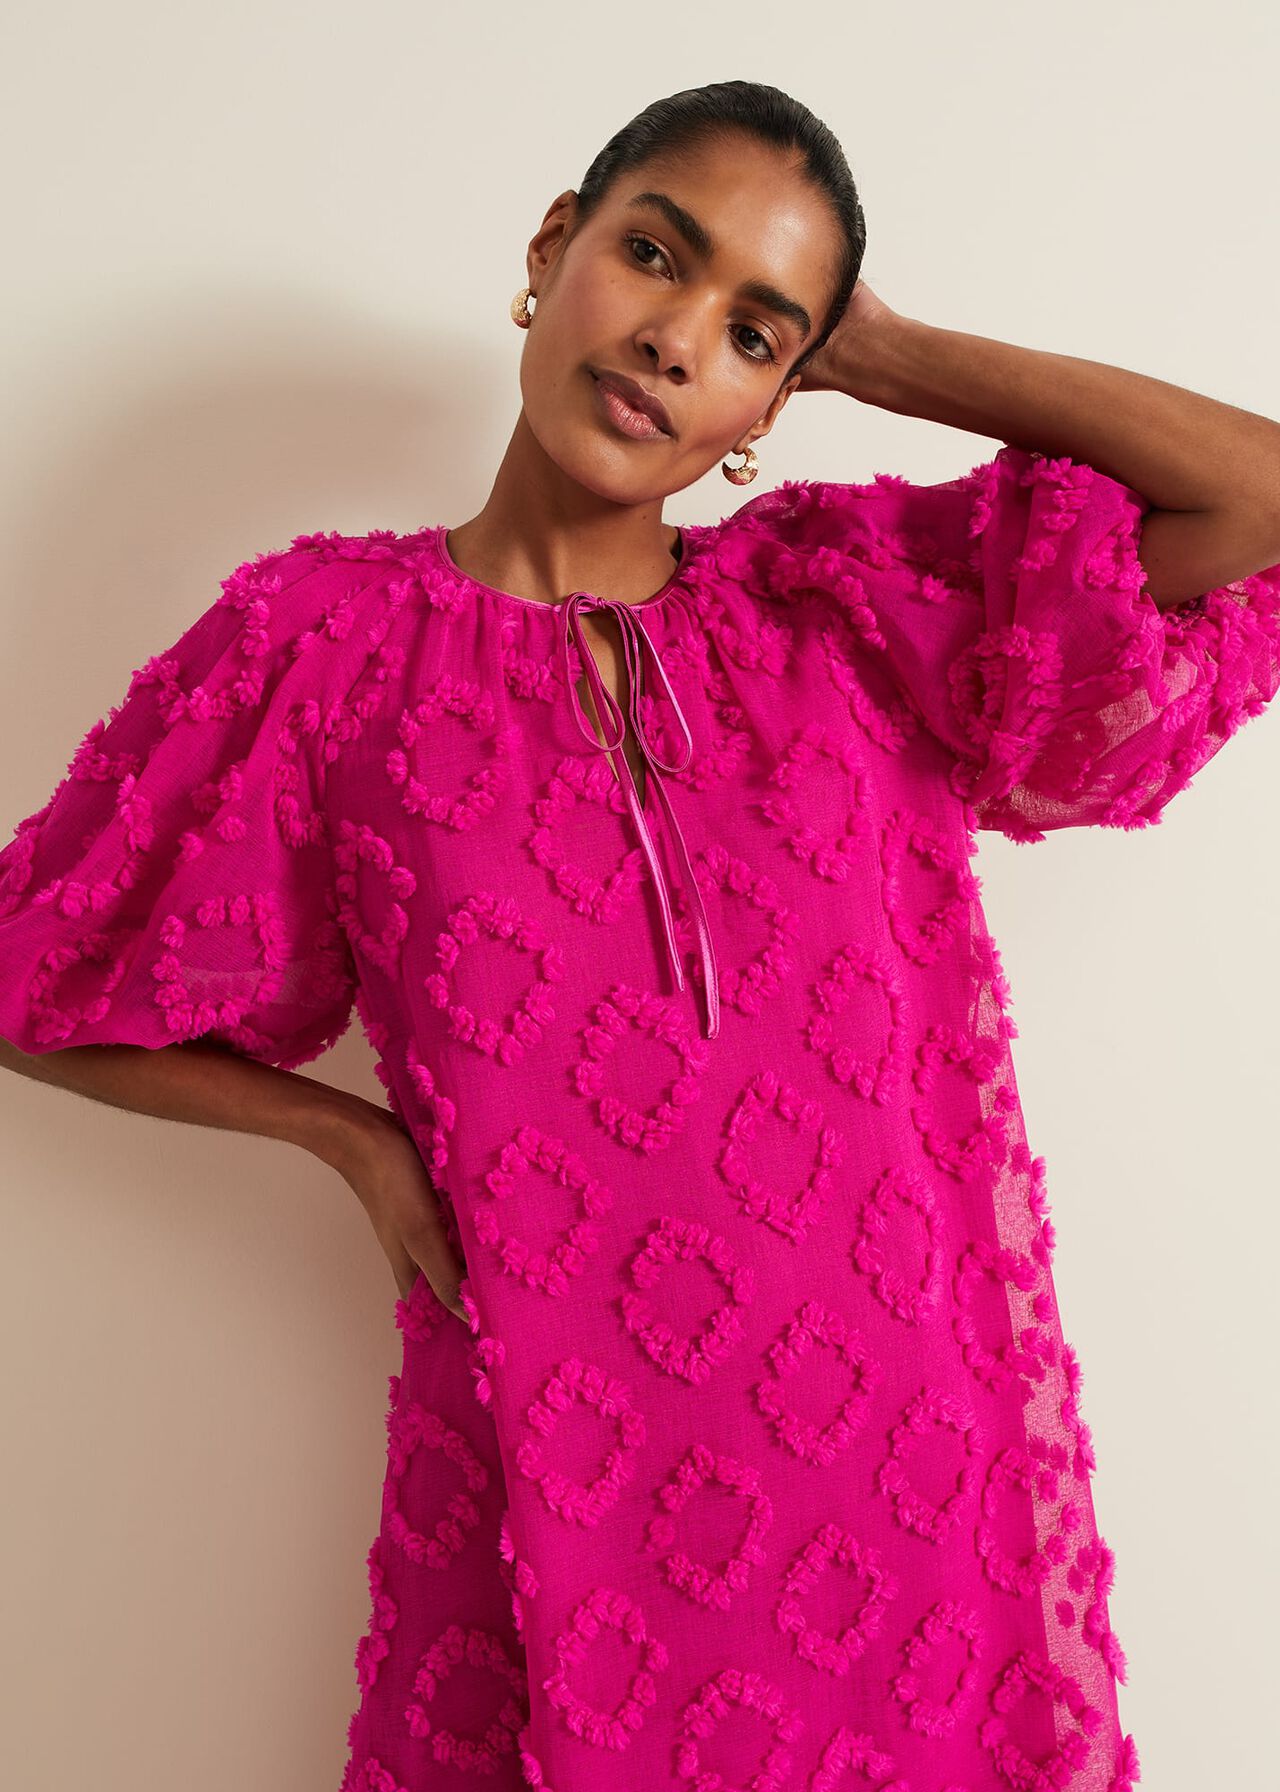 Bella Pink Textured Midi Dresss